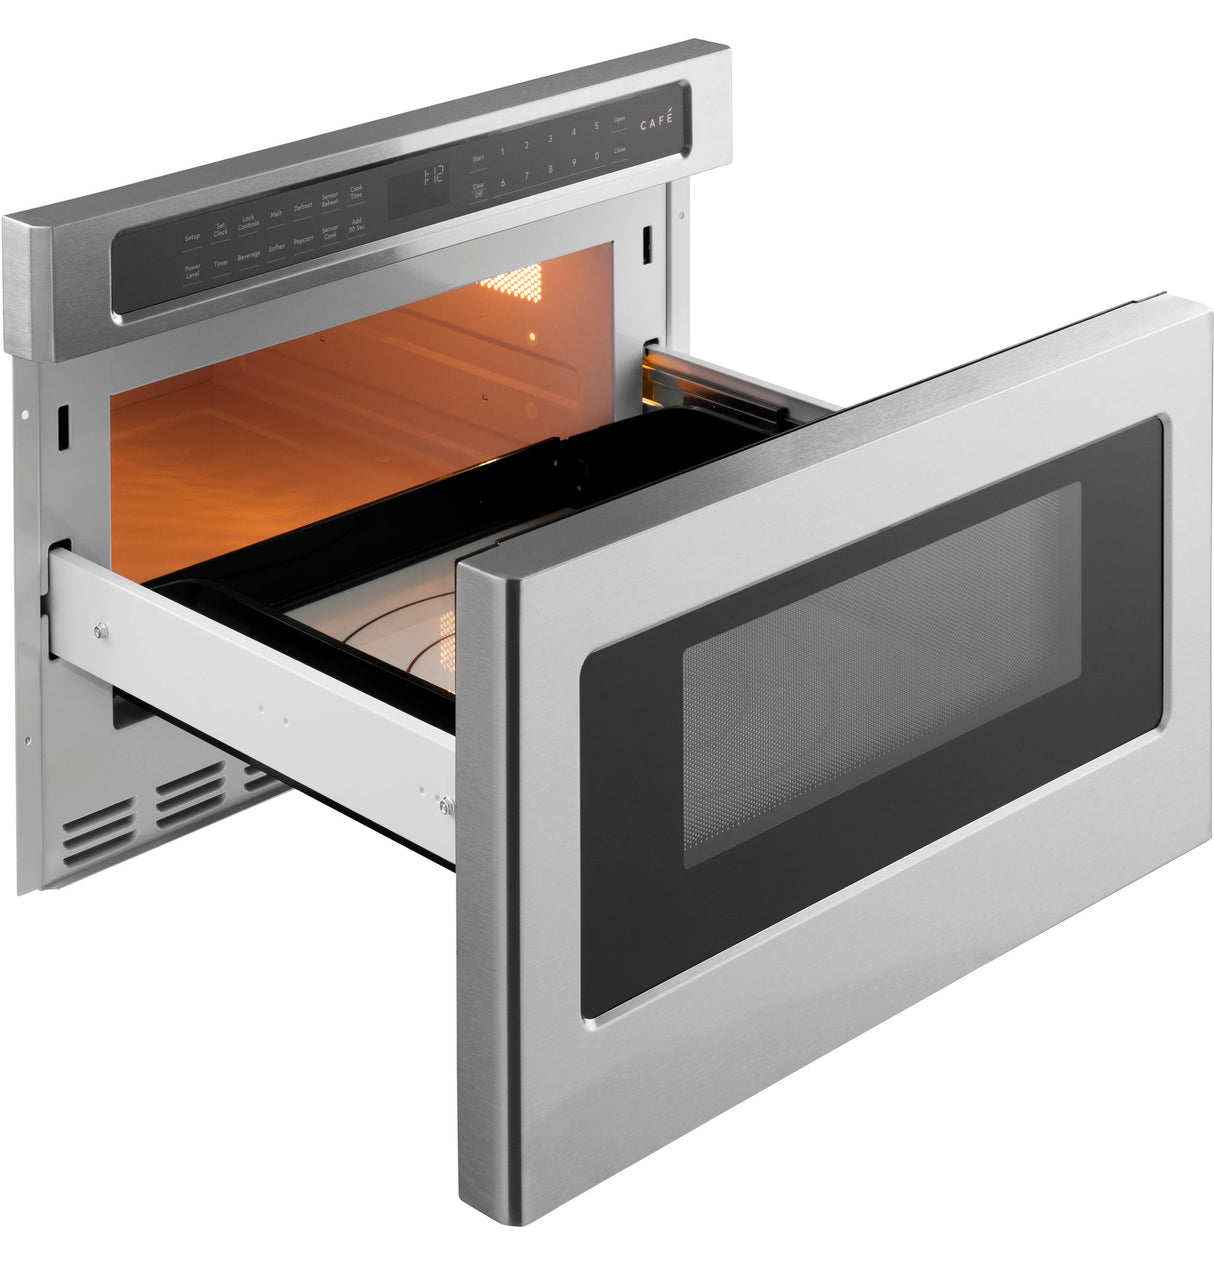 Caf(eback)(TM) Built-In Microwave Drawer Oven - (CWL112P2RS1)